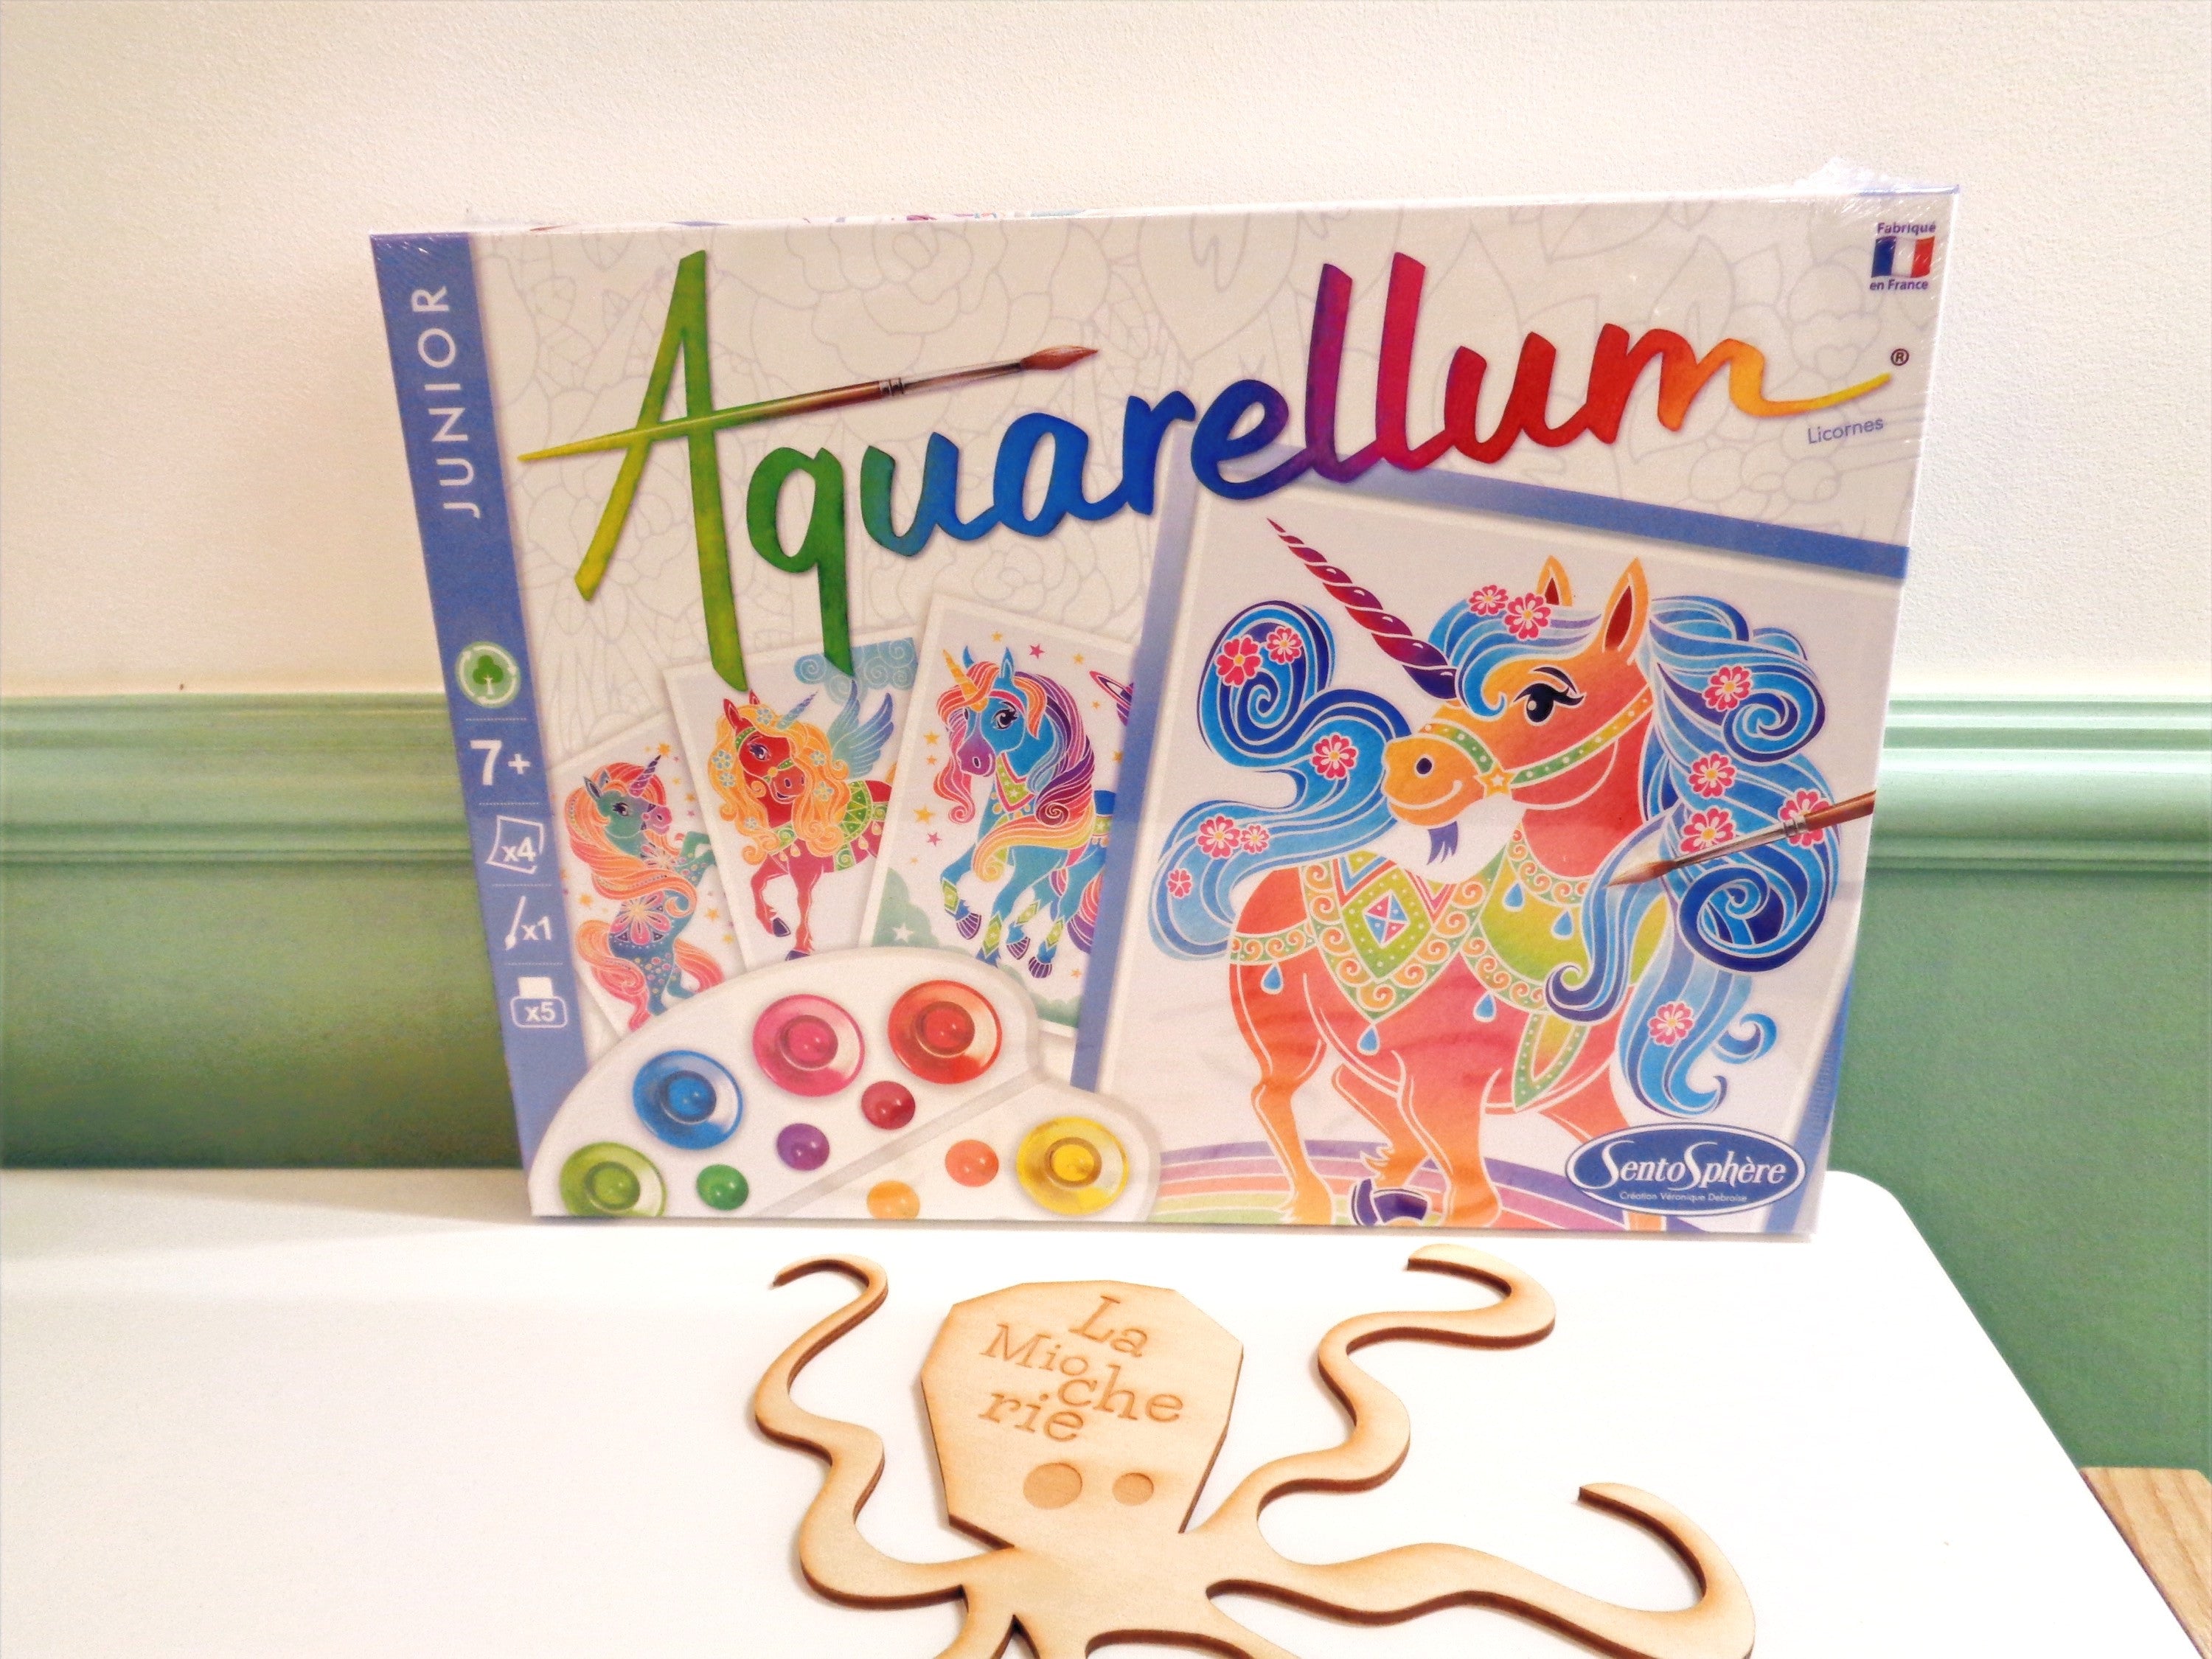 The Aquarellum “Unicorns” Sentosphere